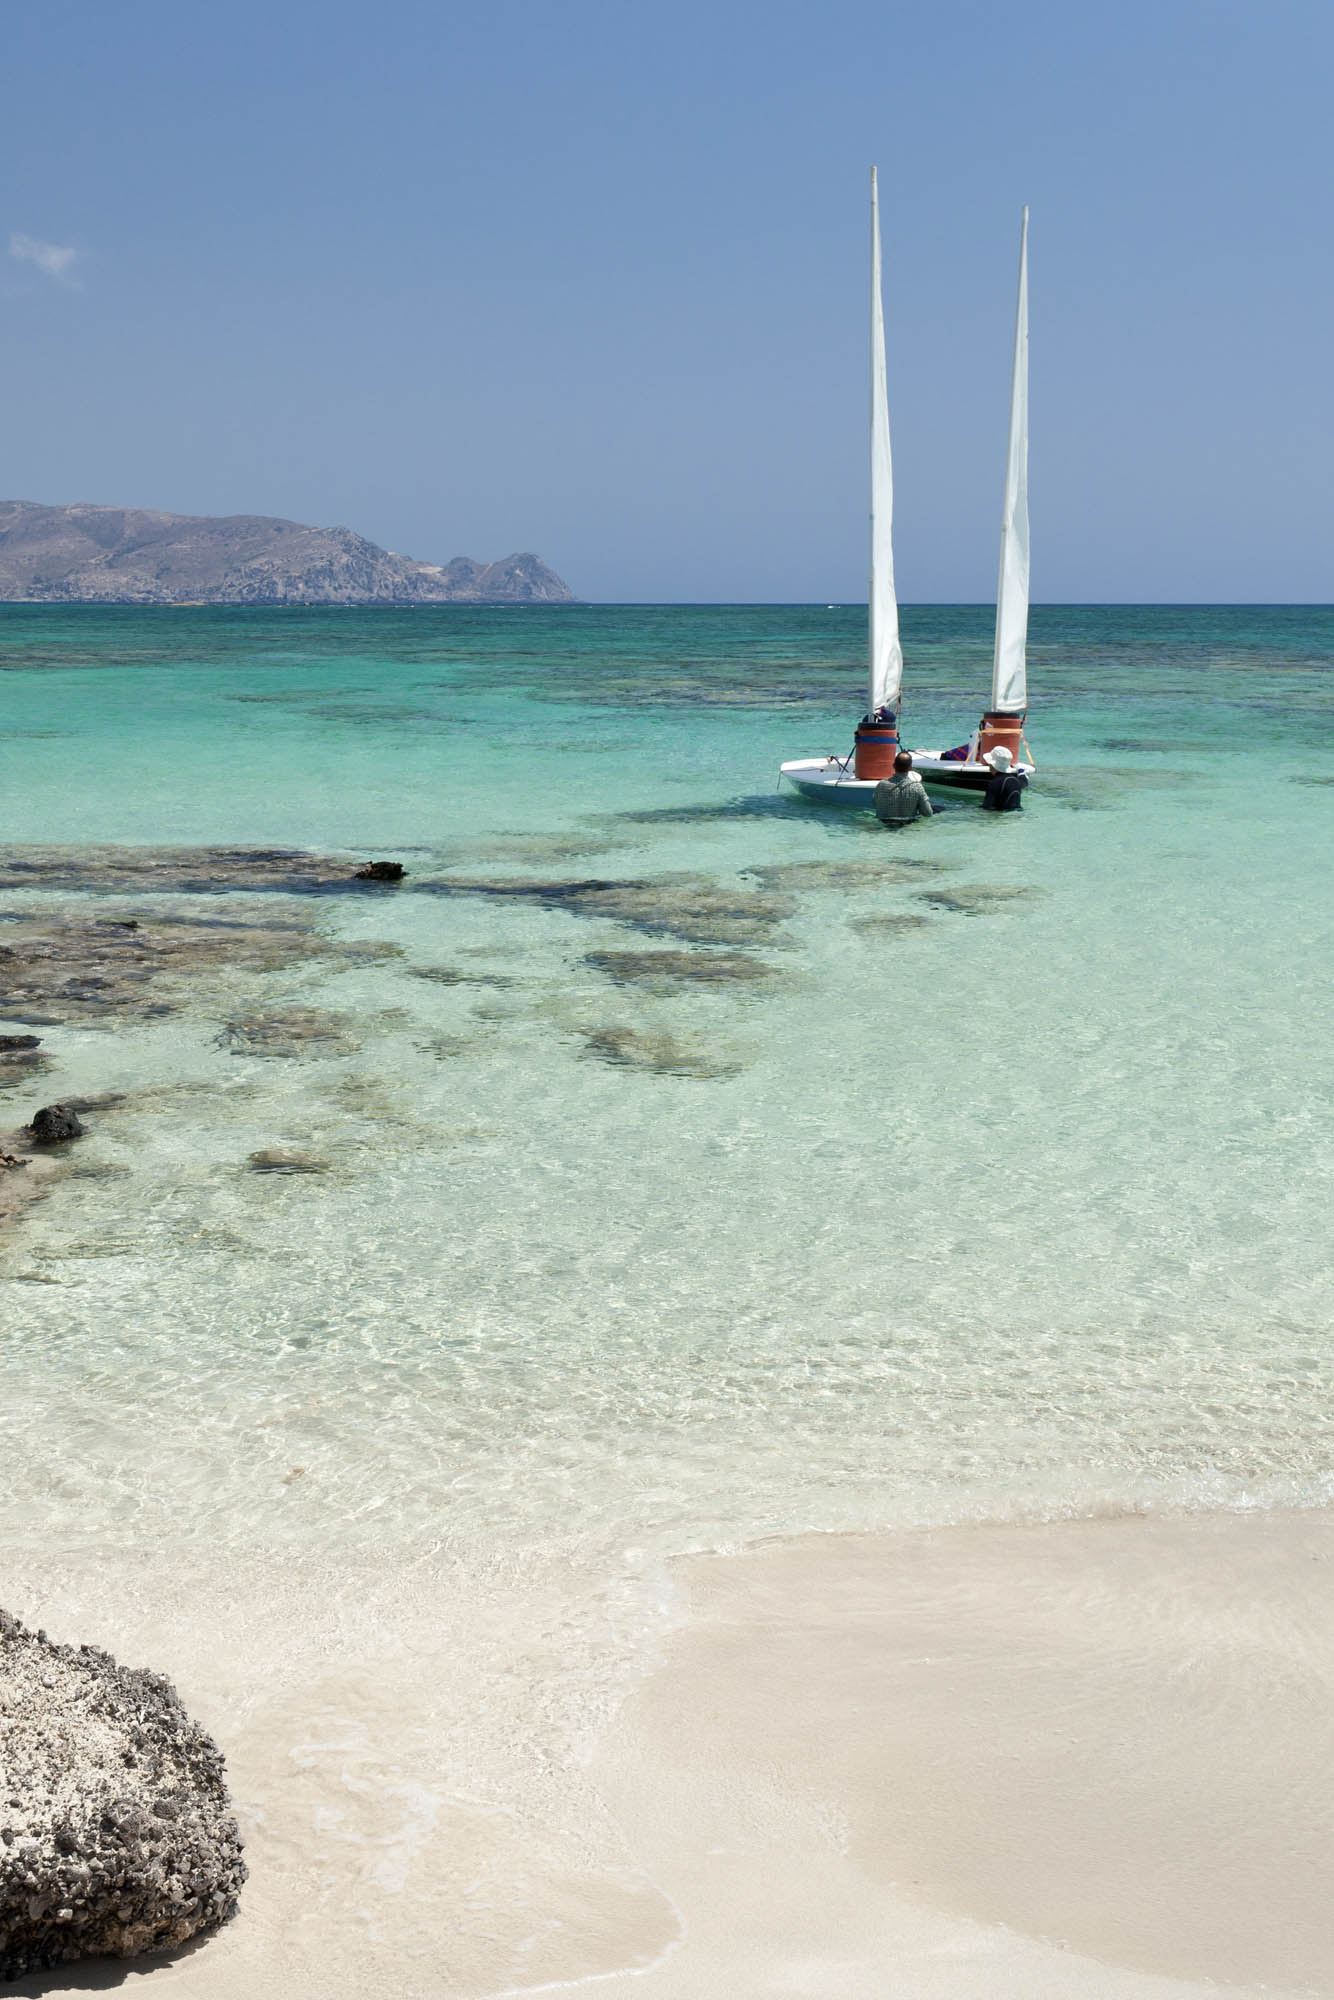 wspaniała plaża elafonisi, różowy piasek, lazurowa woda i jachty w tle